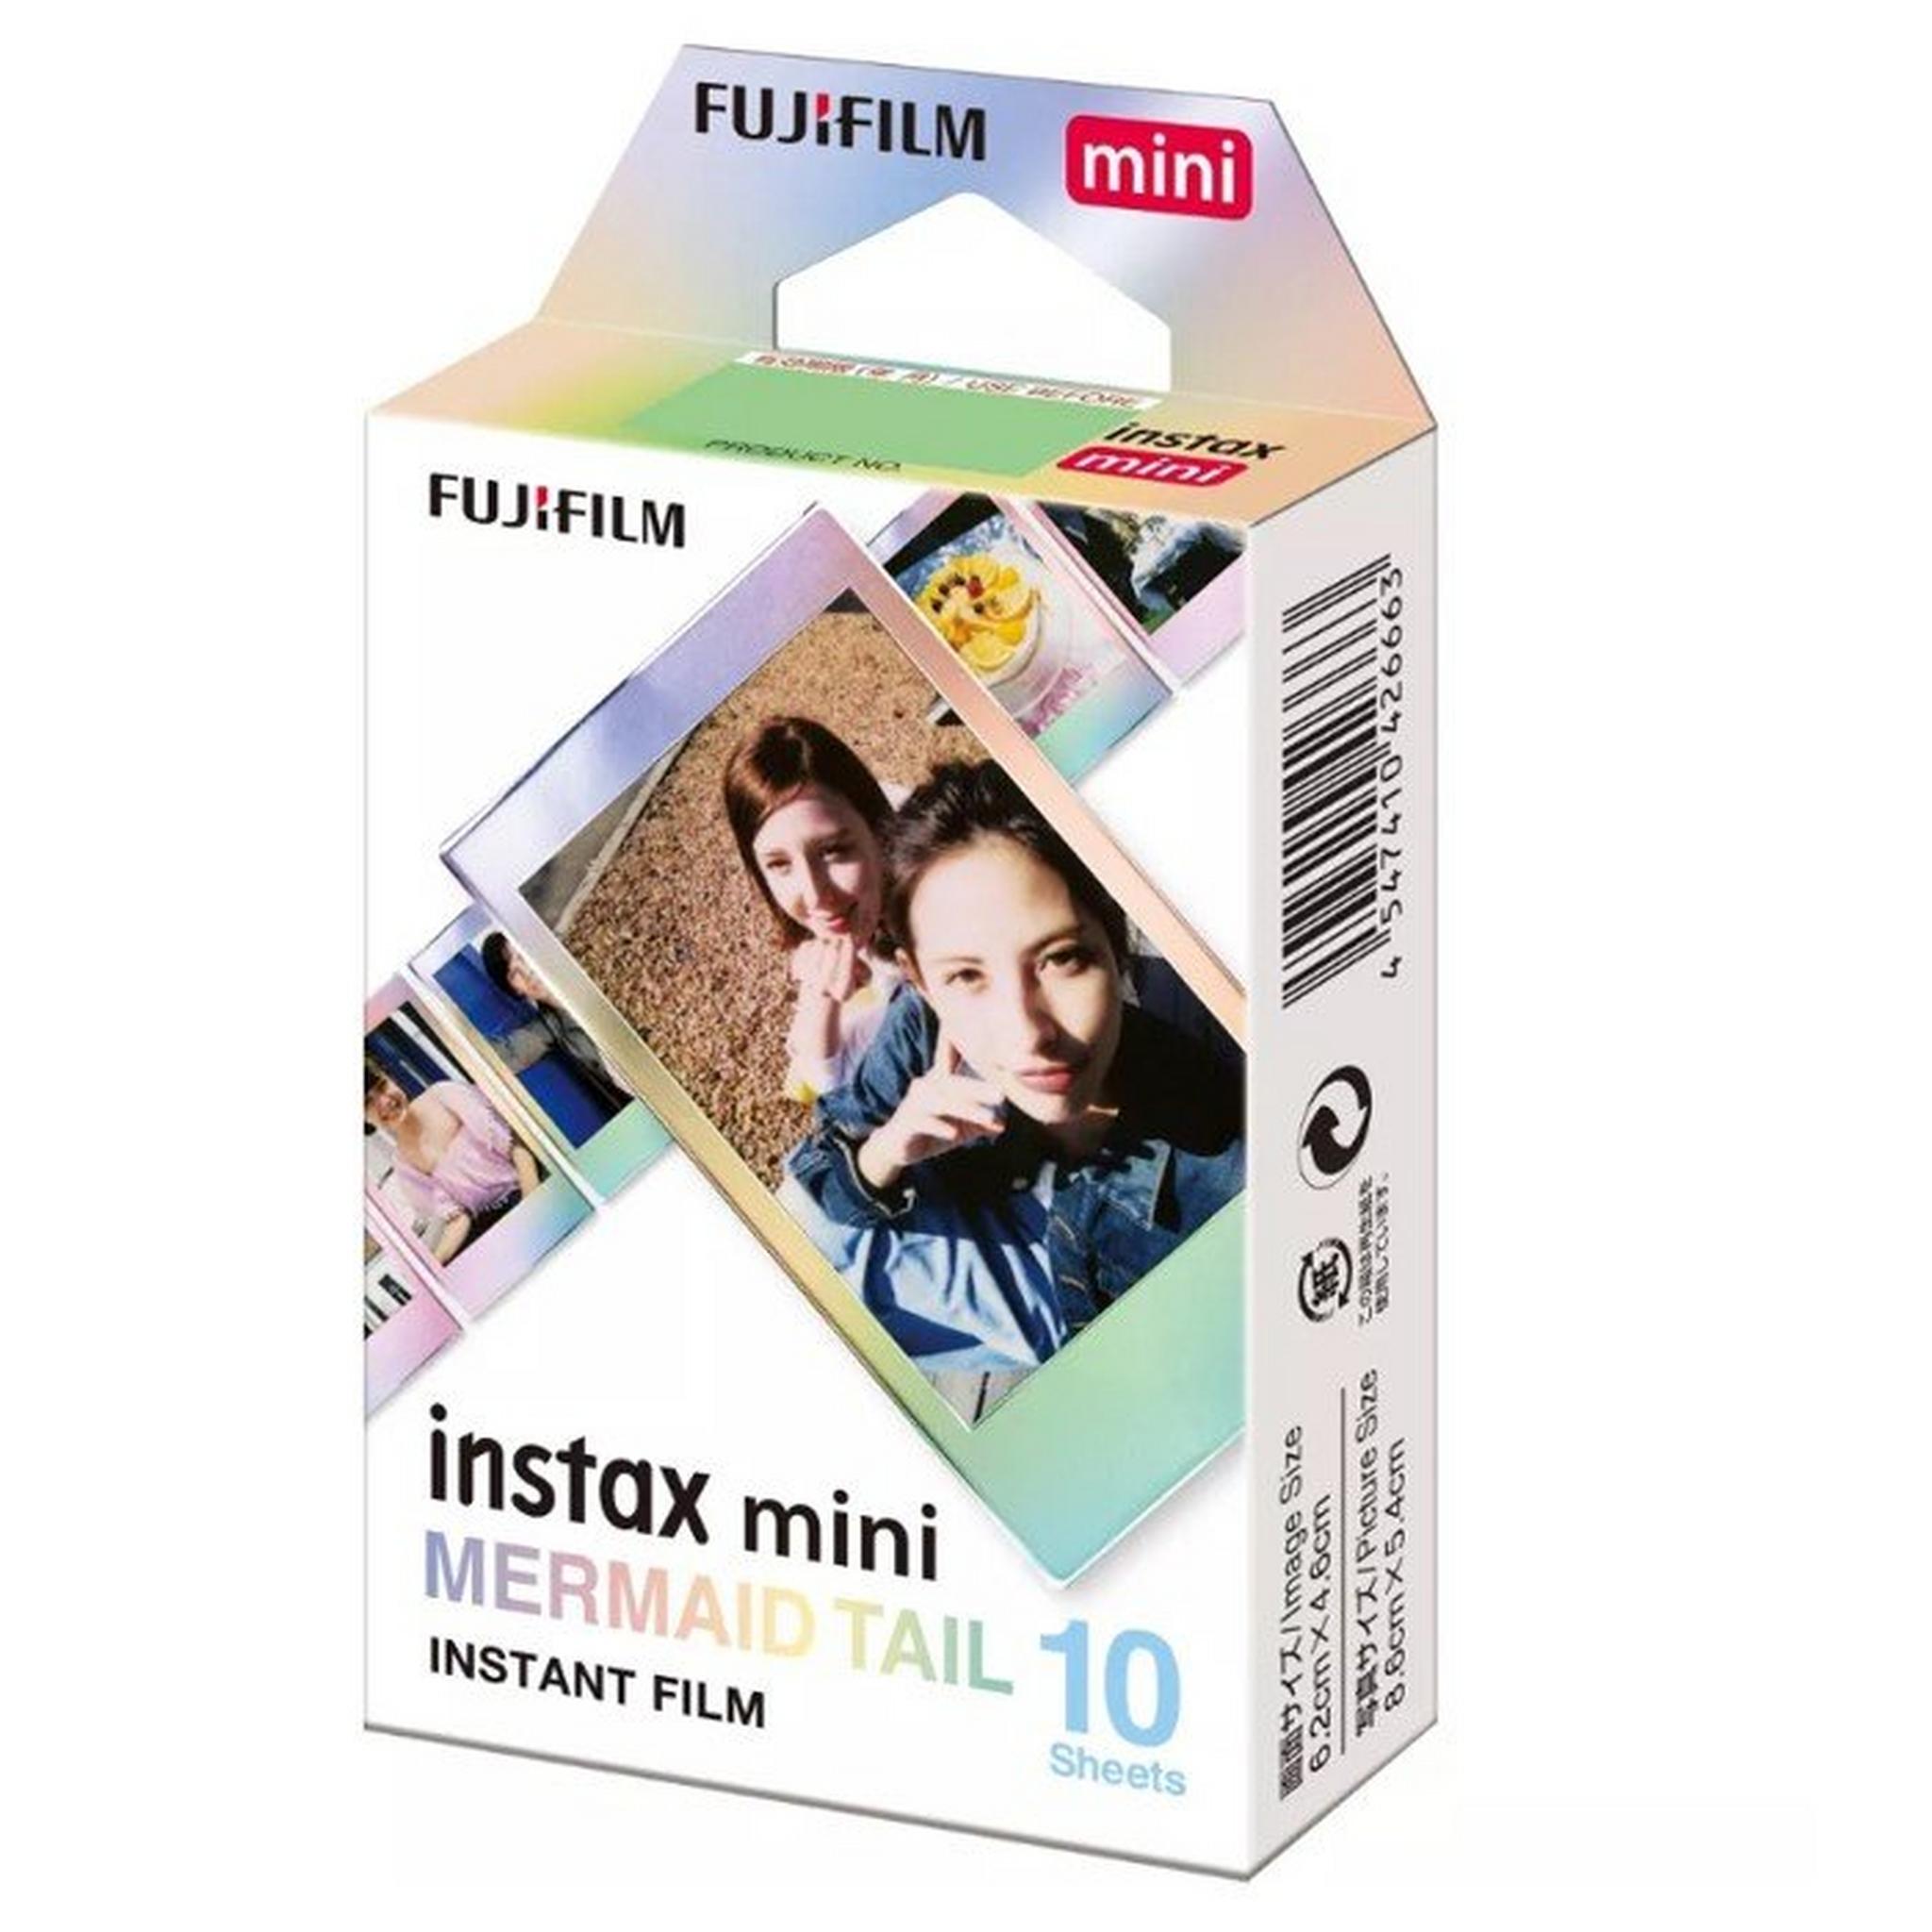 Fujifilm Instax Mini Mermaid Tail Film, 10 Sheets, INSTX MINI - MT